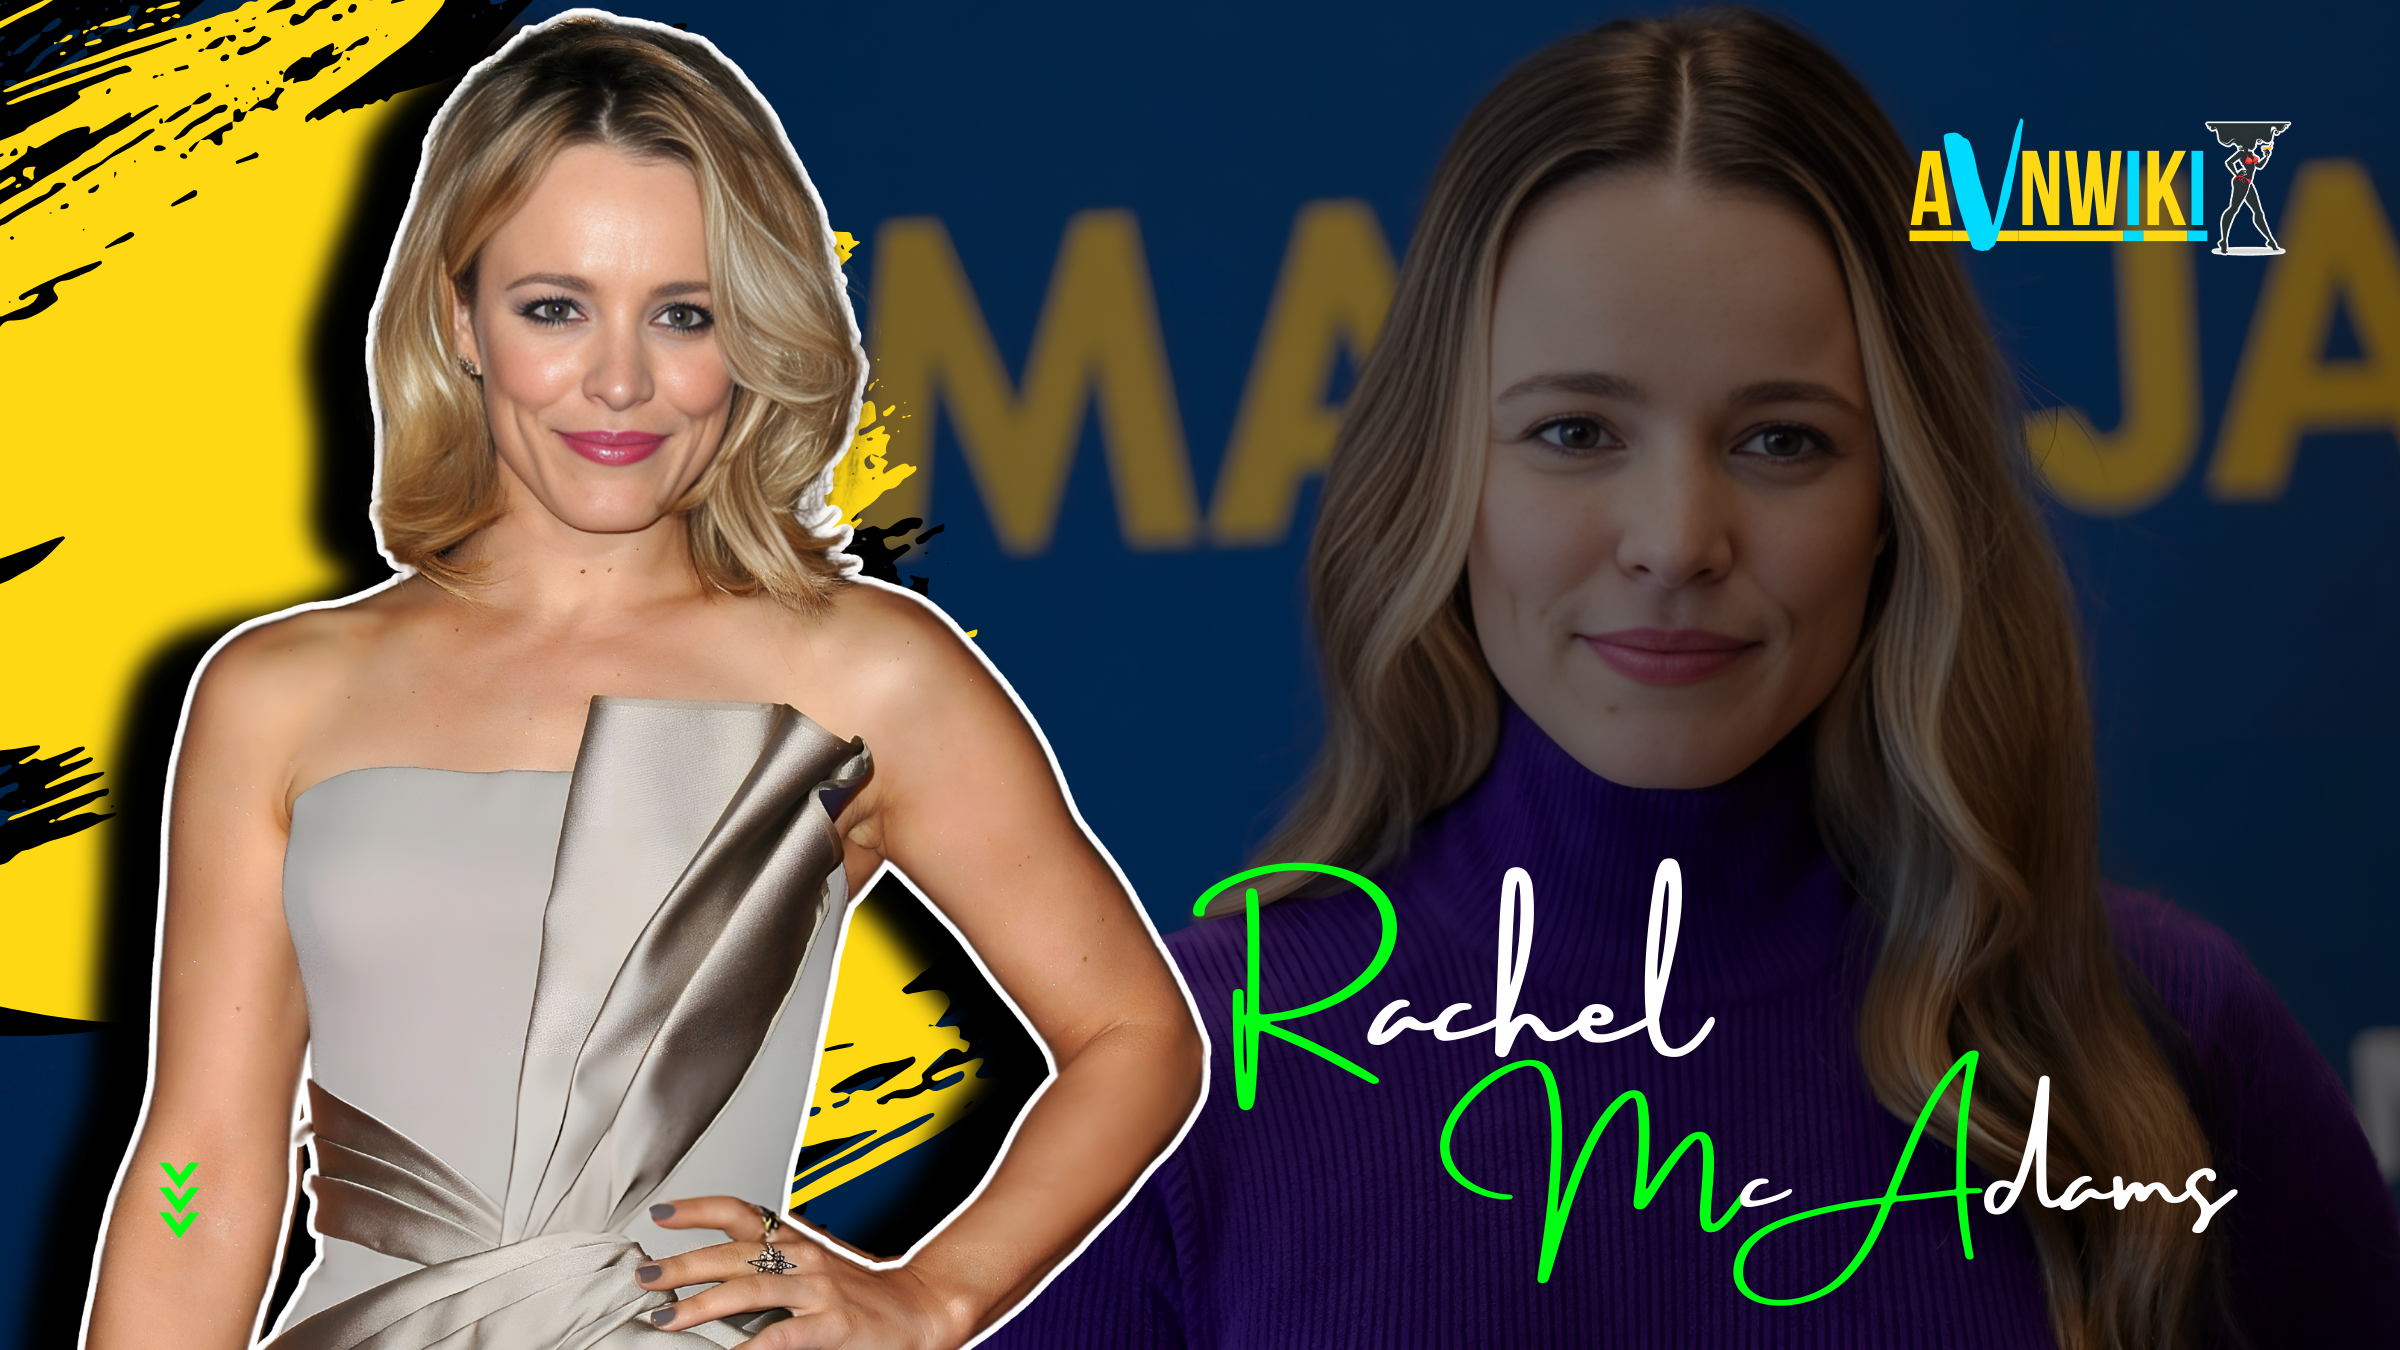 Rachel McAdams Biography, Wiki, Age, Height, Boyfriend, Husband, Children, Movies, Pics